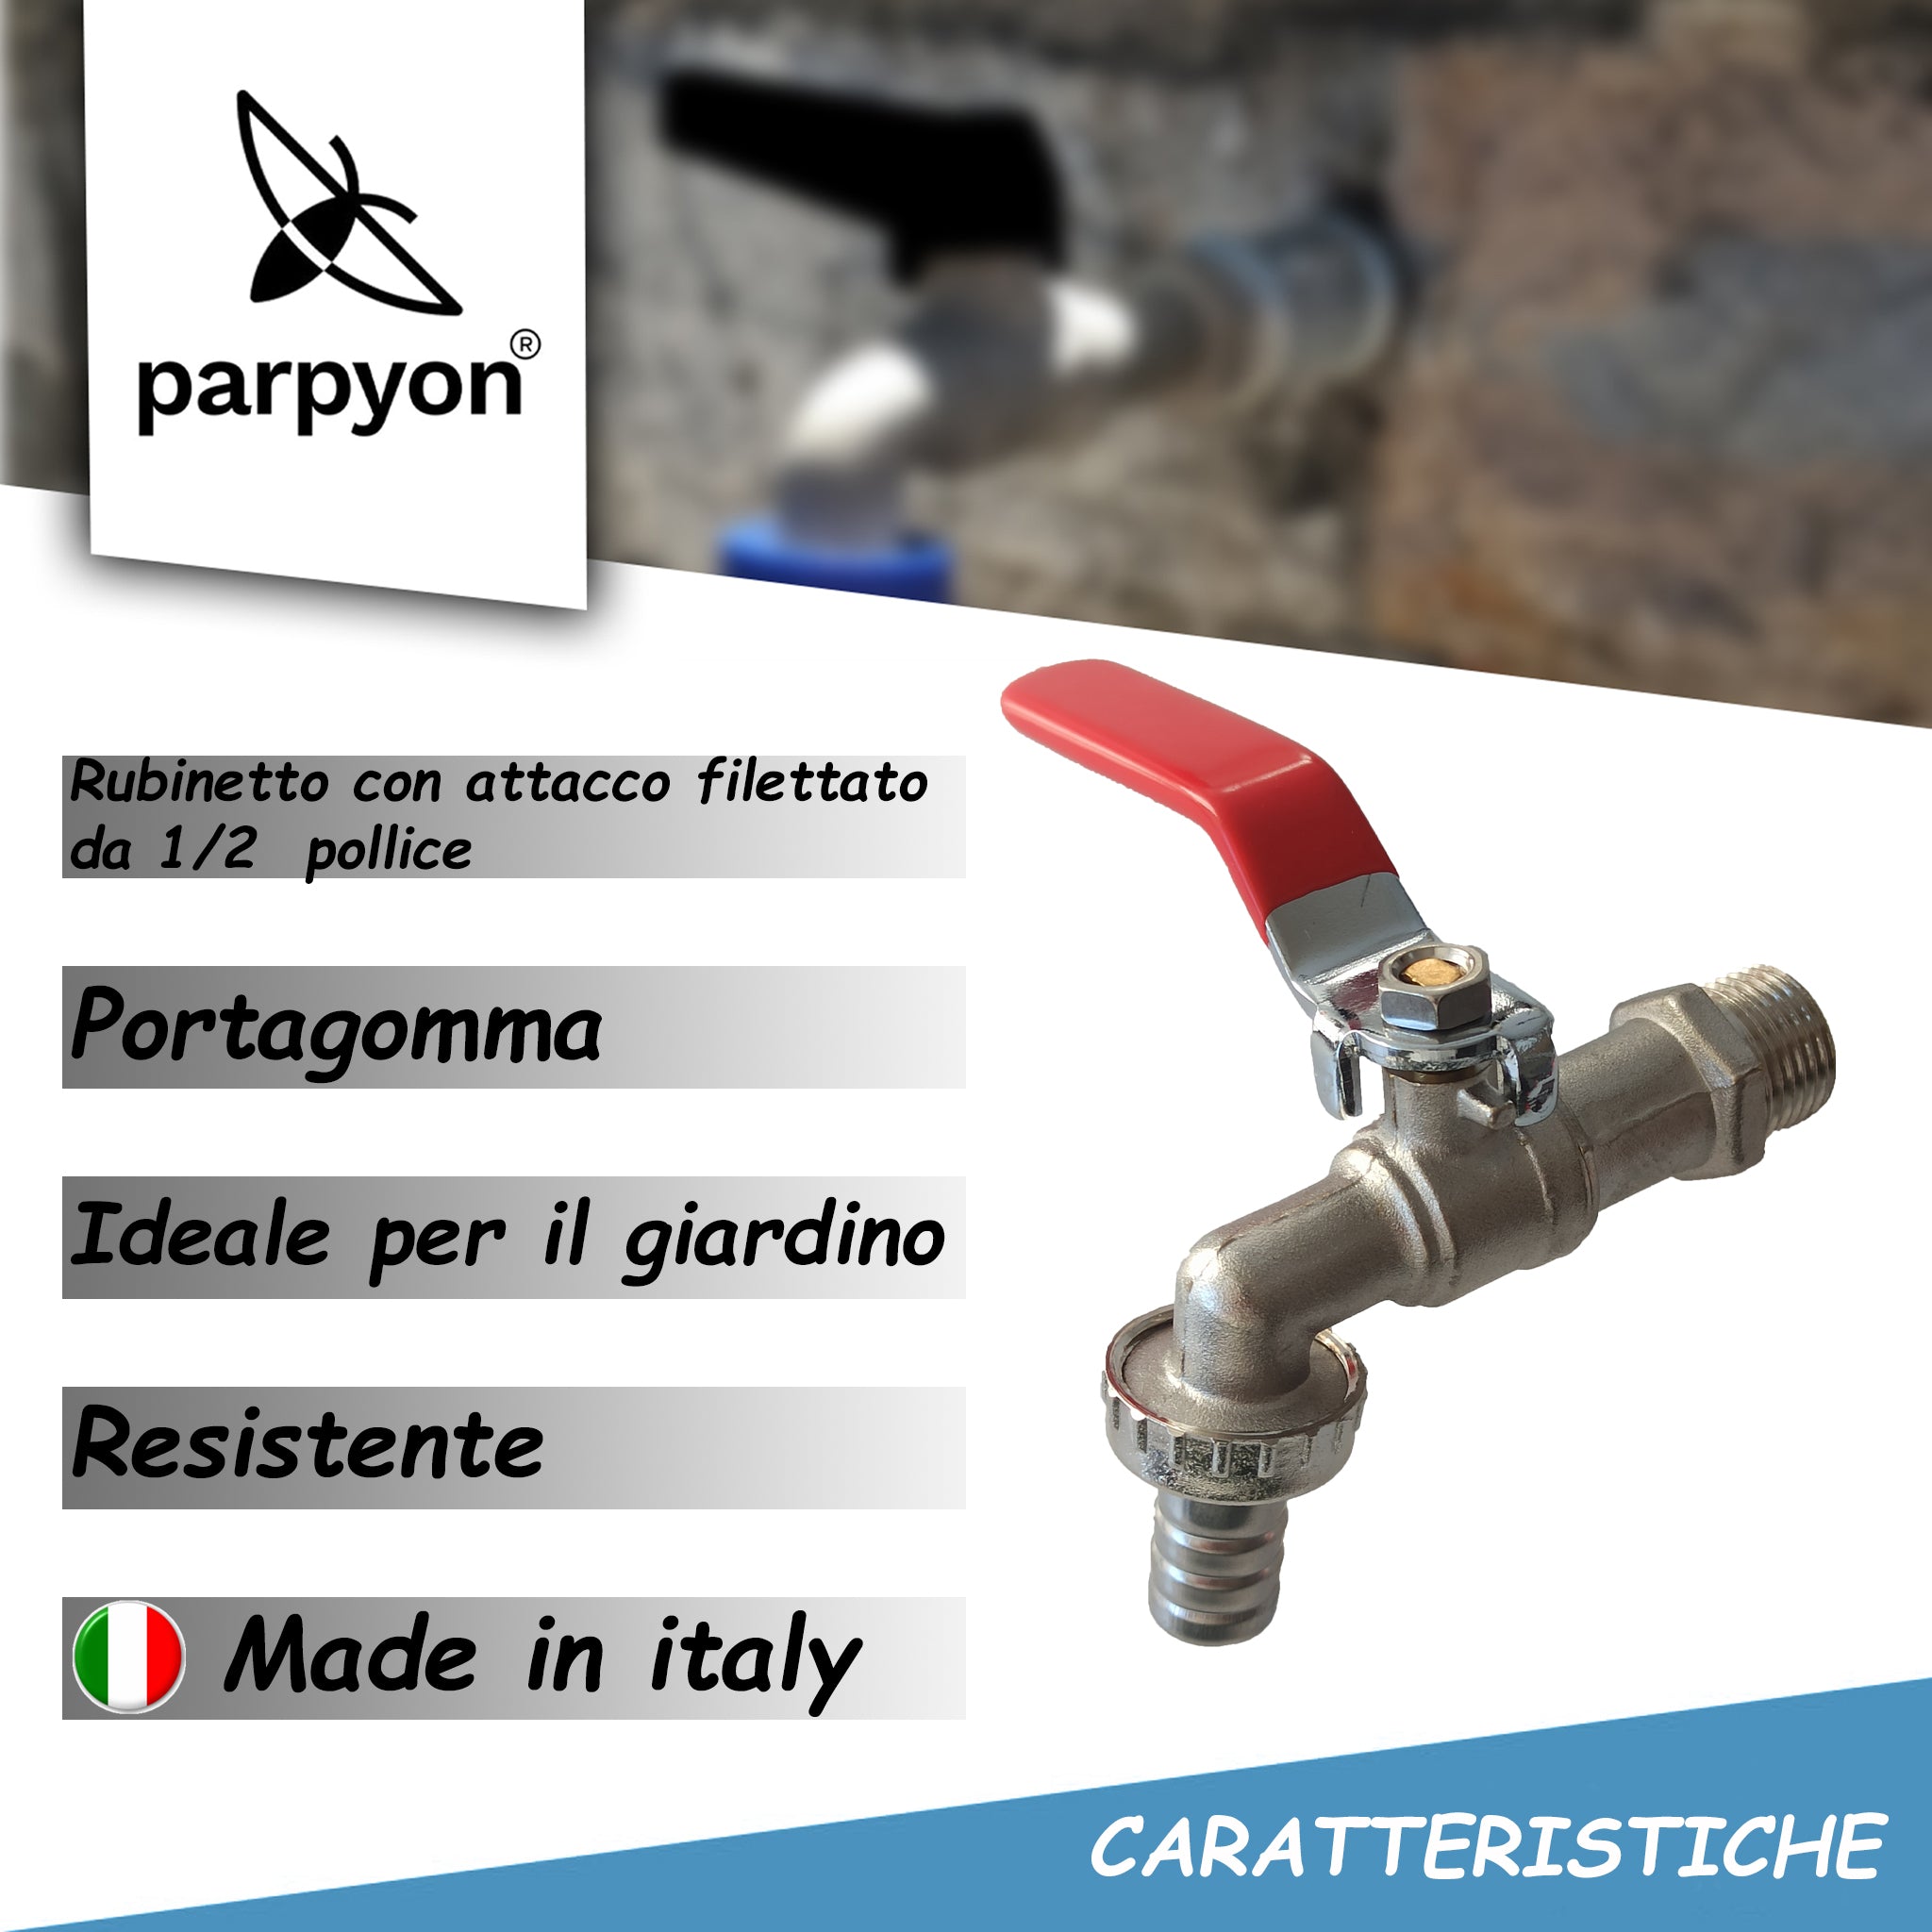 Parpyon® Rubinetto Giardino 1/2 pollice con porta gomma - Prodotto italiano - rubinetto lavabo da esterno con teflon per raccordi tubo irrigazione